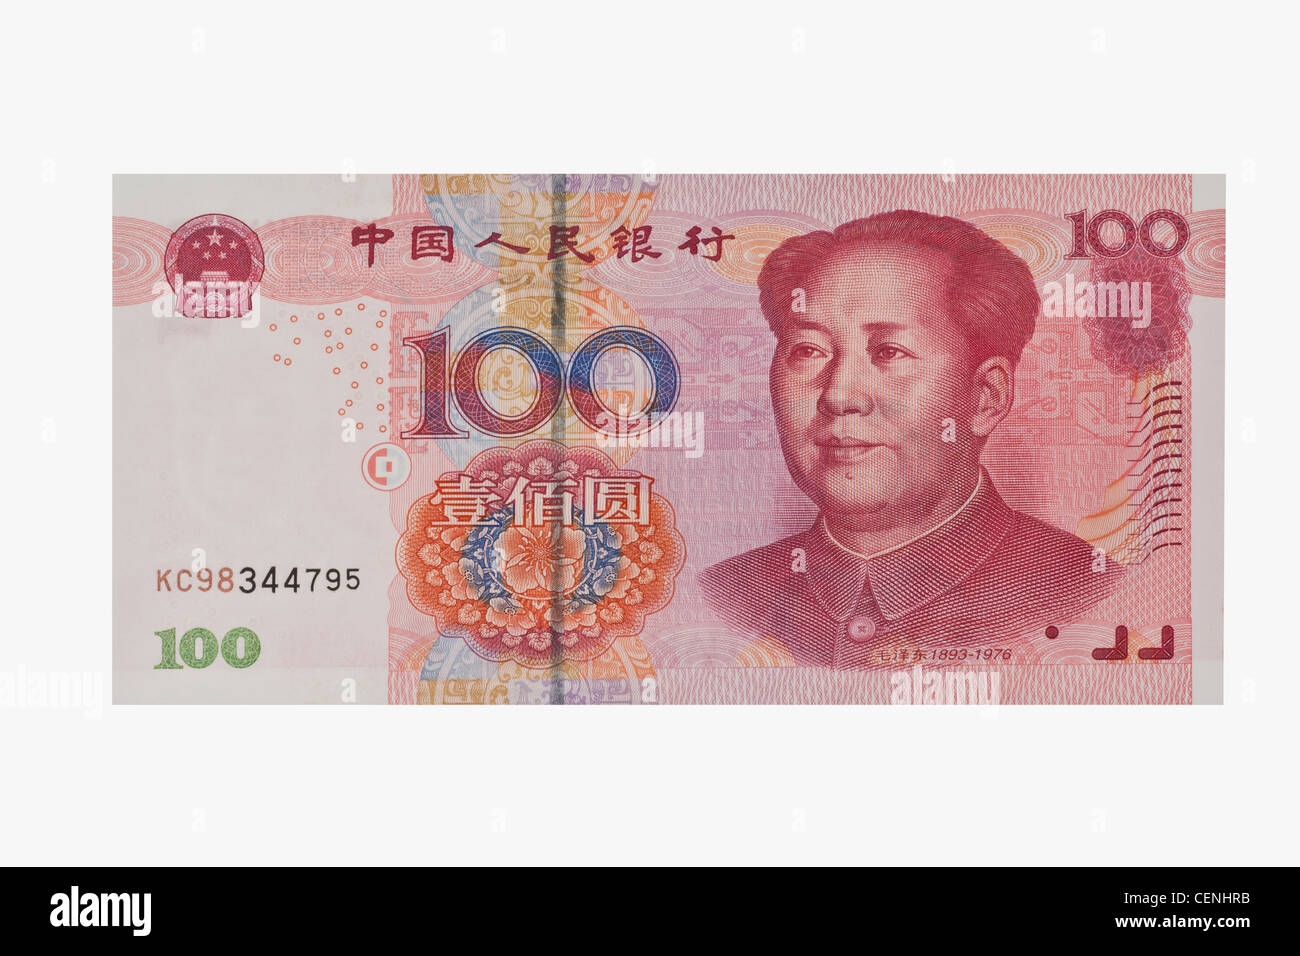 100 yuan bill avec le portrait de Mao Zedong. Le renminbi, la monnaie chinoise, a été introduit en 1949. Banque D'Images